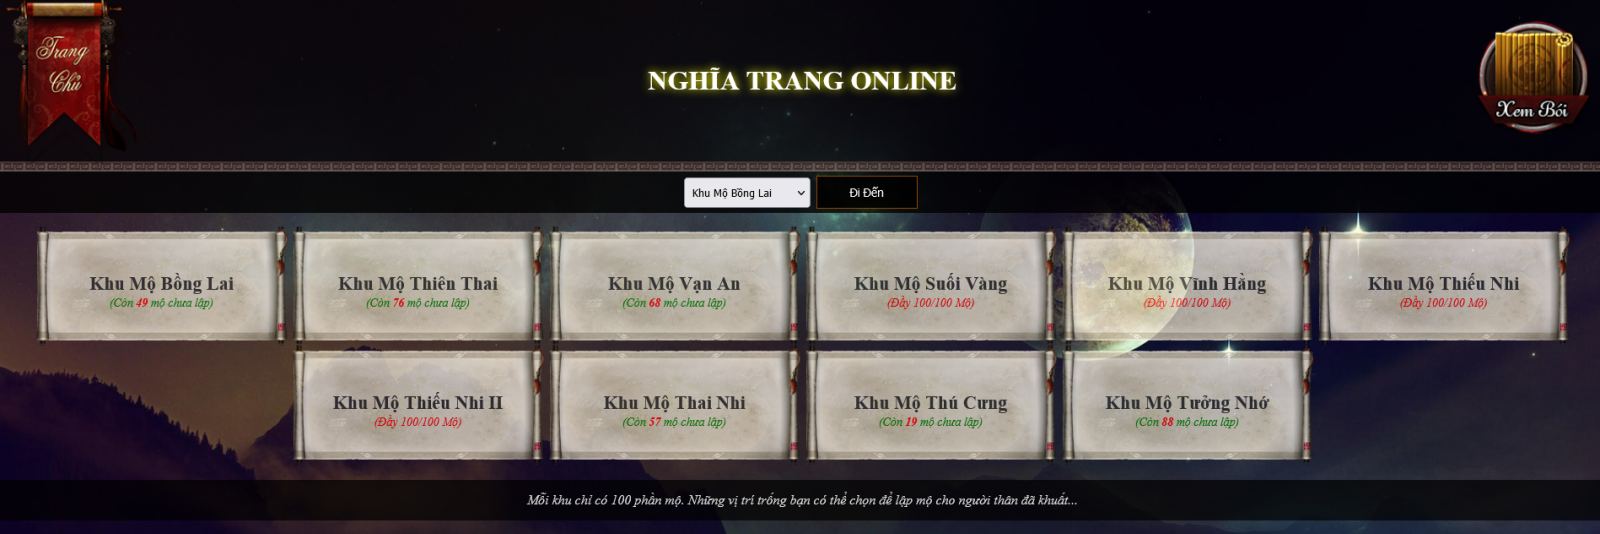 Screenshot 2022-11-28 at 20-45-18 Nghĩa Trang Online.png